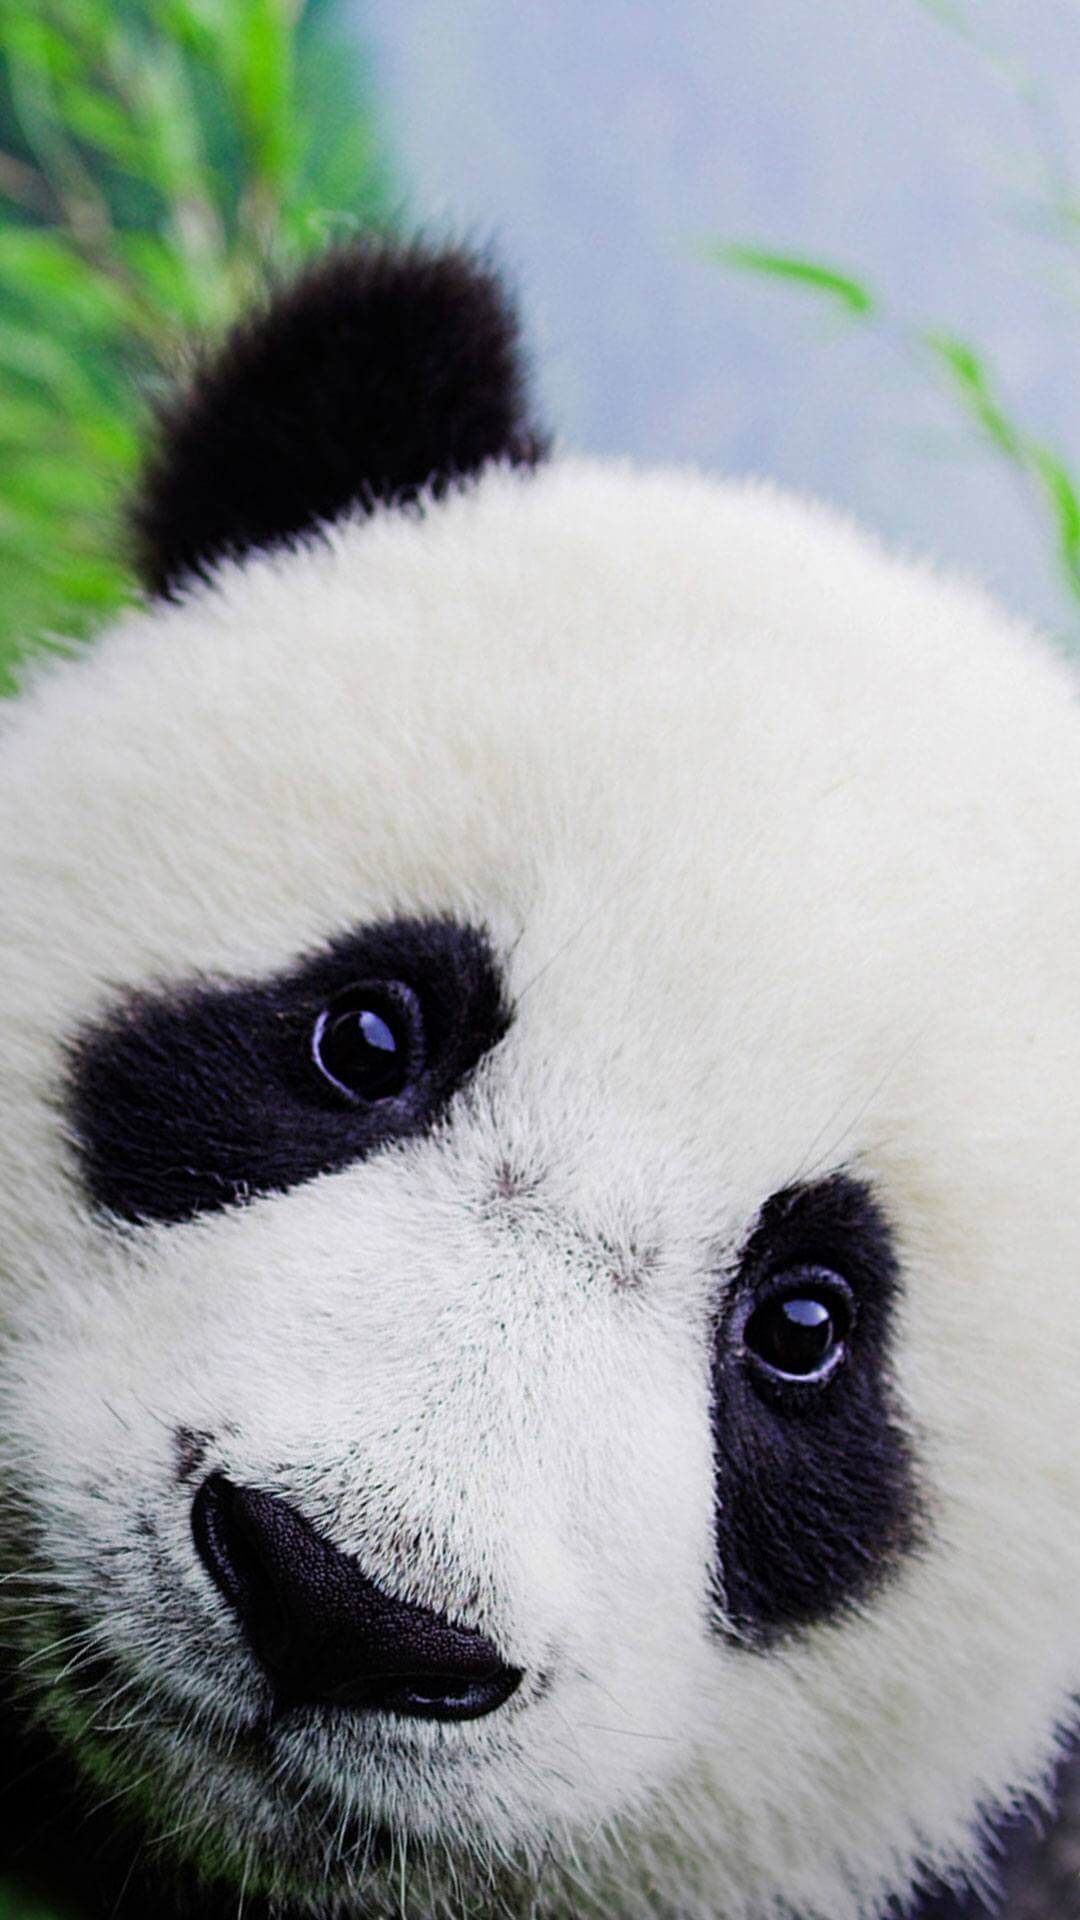 Cute Baby Panda Wallpaper For iPhone HD. Panda wallpaper, Cute